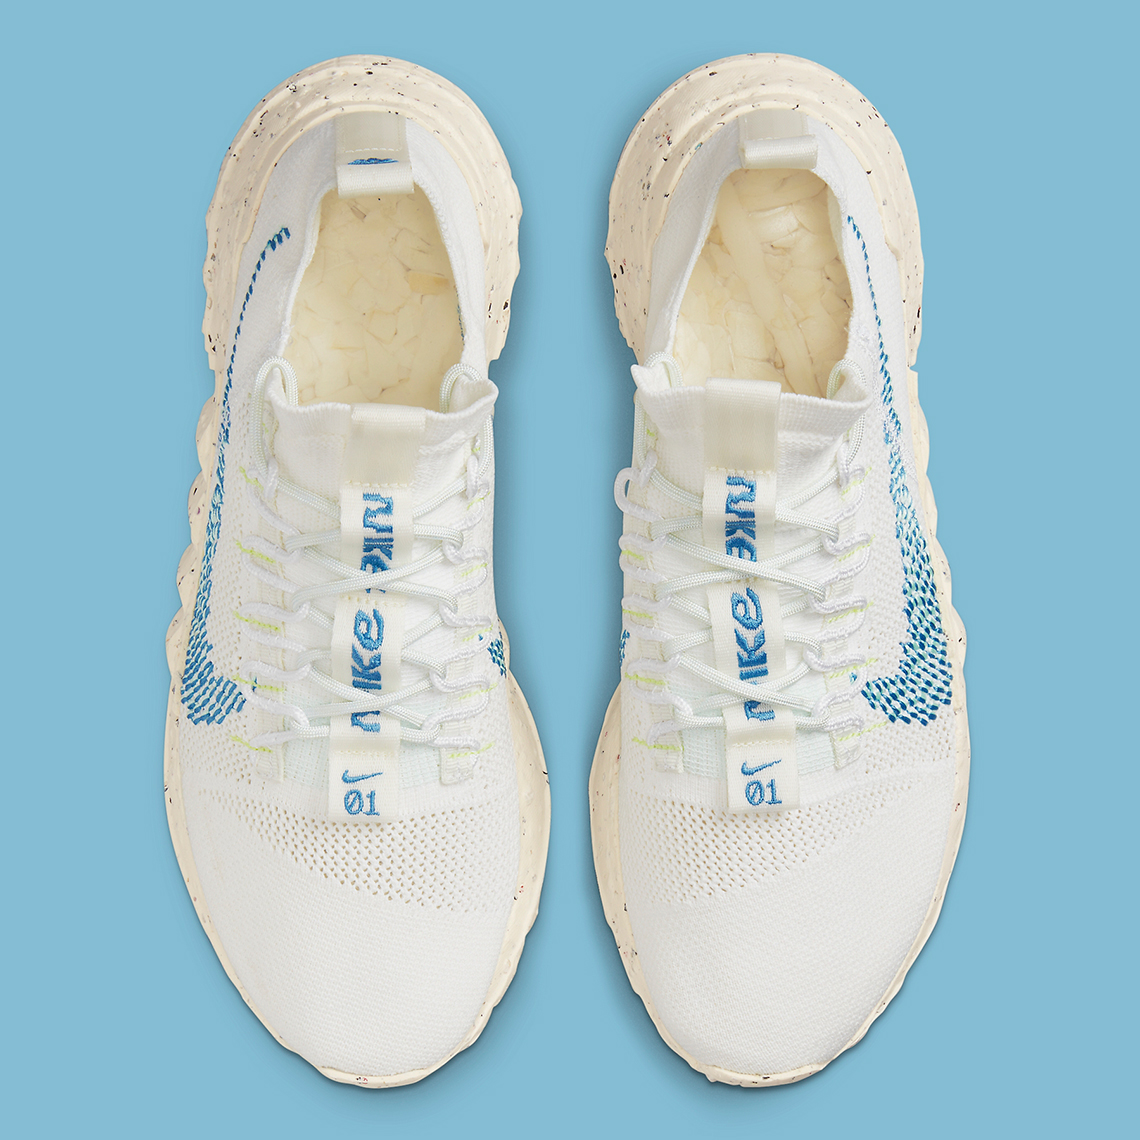 Nike Space Hippie 01 White Blue Dn0010 100 3